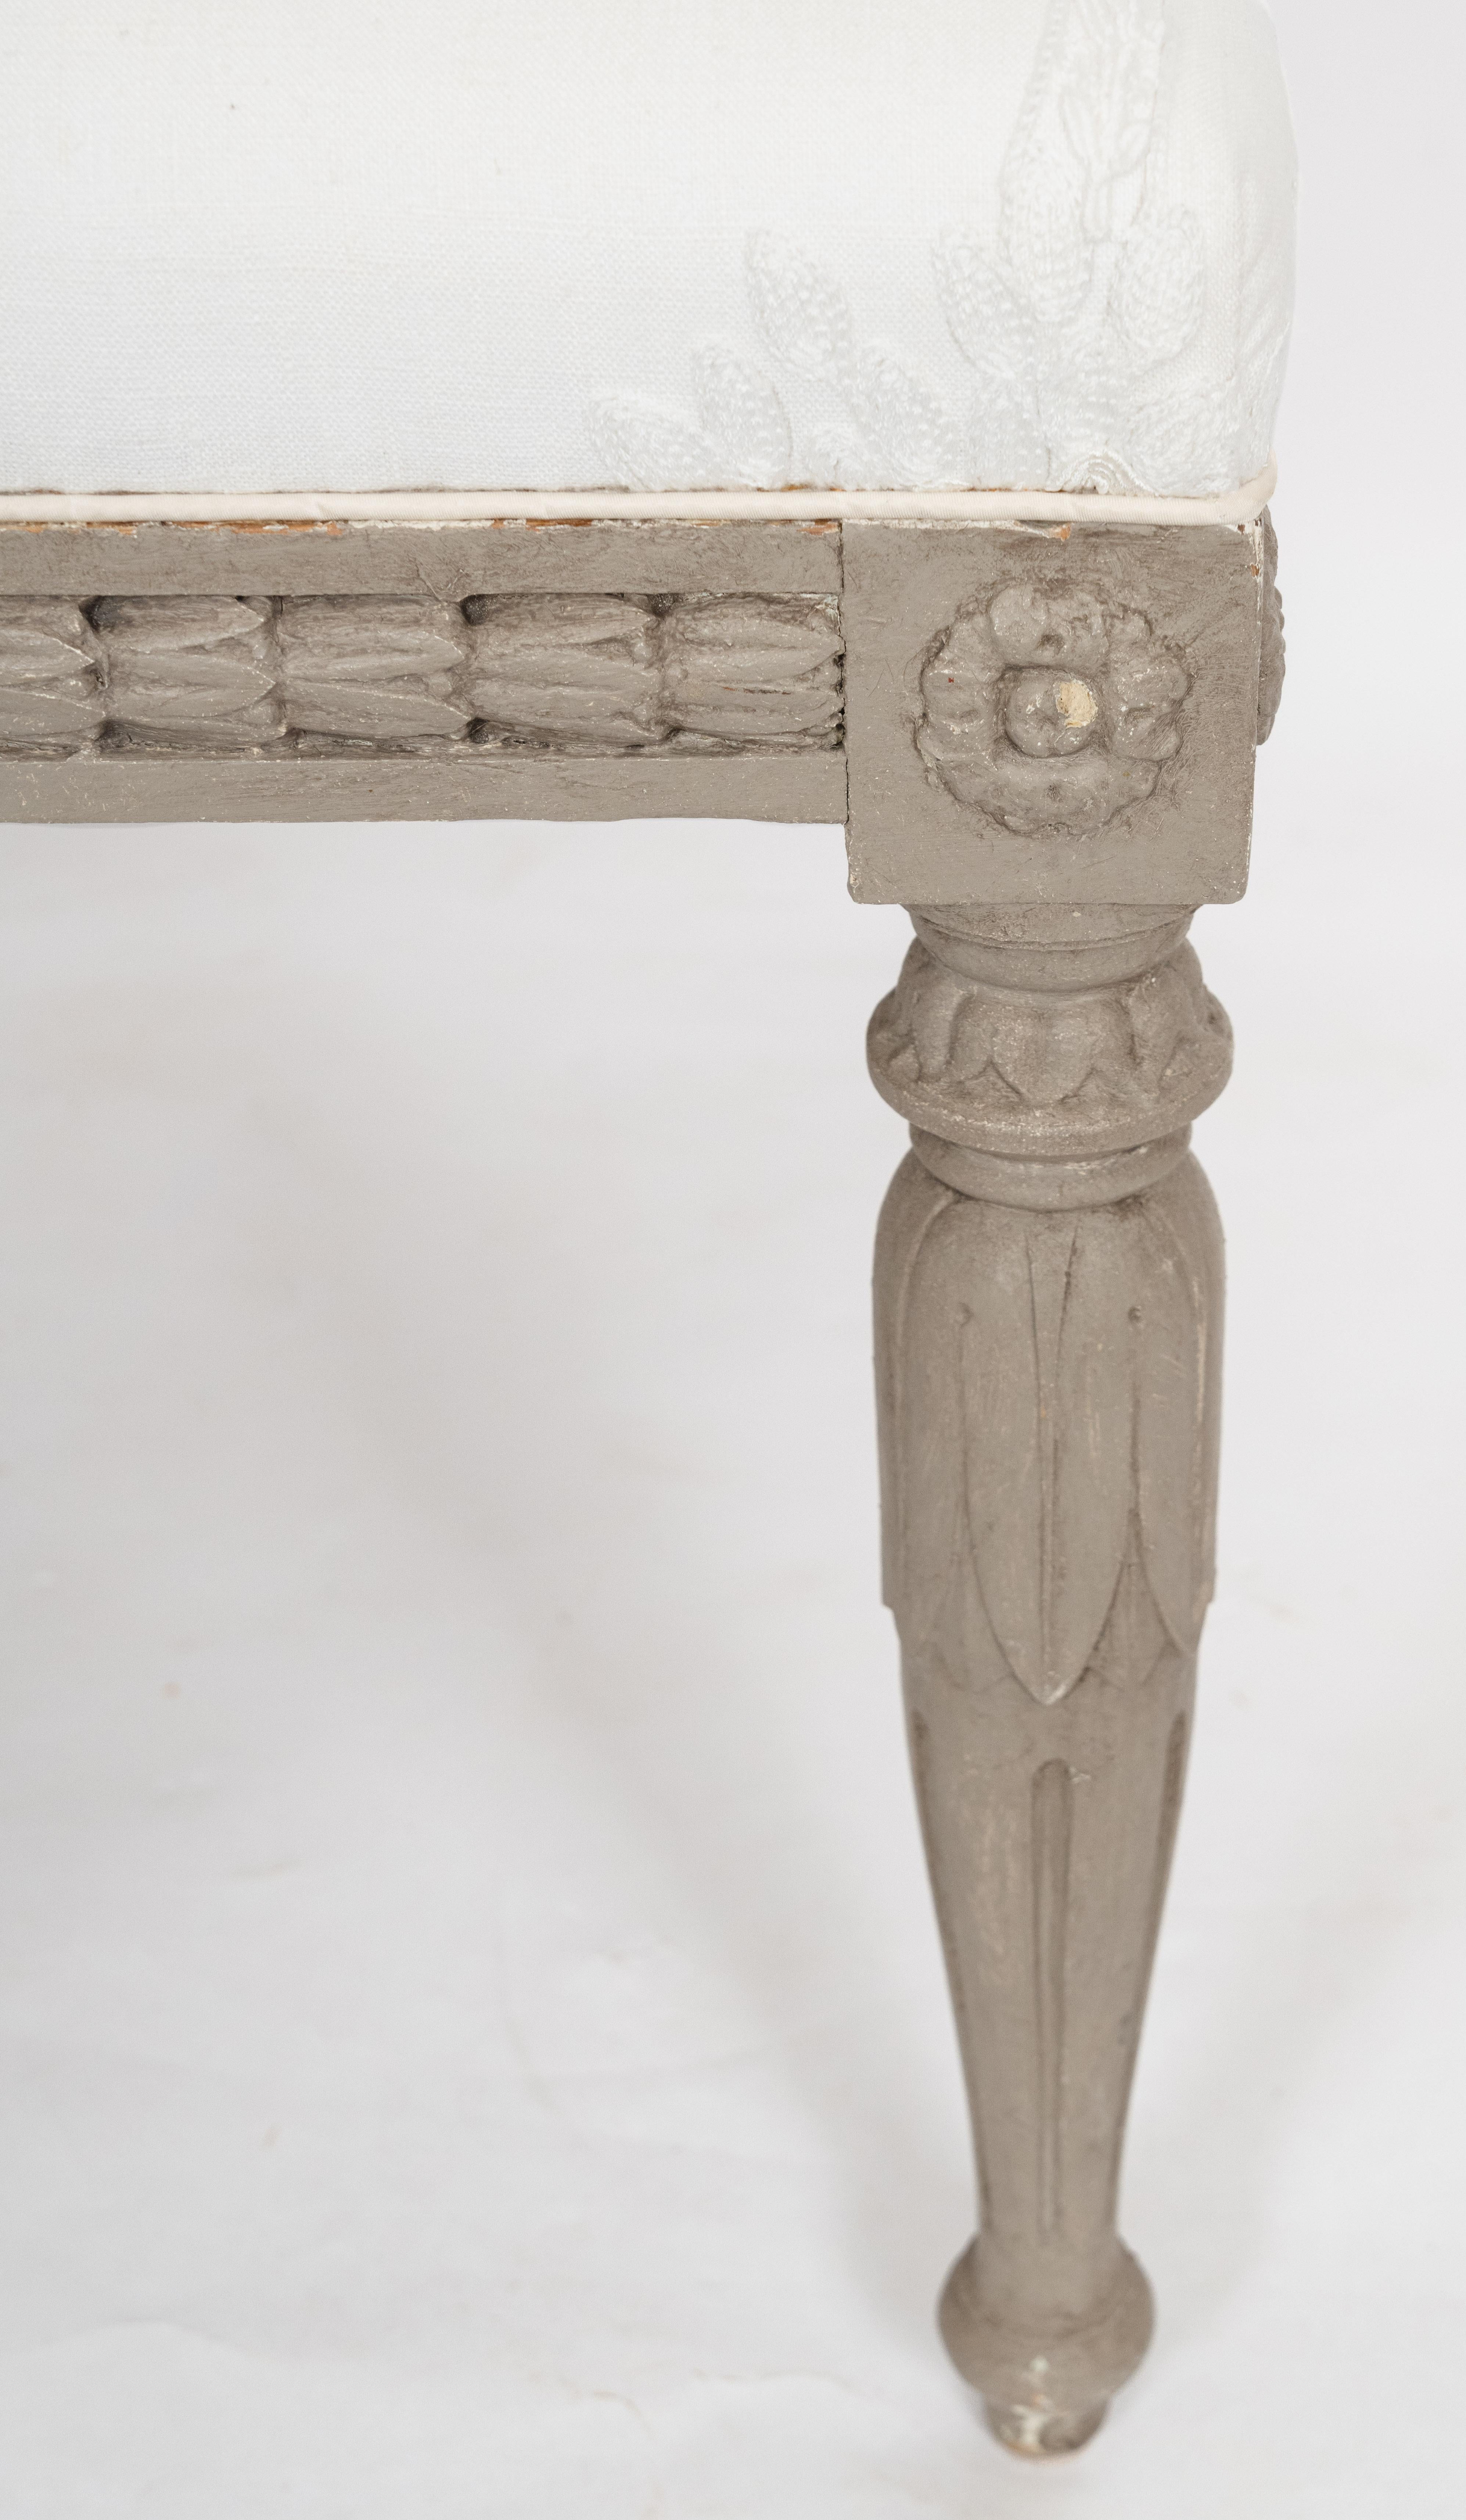 Tabouret de pied gustavien du 19ème siècle avec des sculptures ornées le long de la base en bois. La bordure est ornée d'une frise de campanules soutenue par quatre pieds fuselés en forme de colonnes cannelées à palmettes. Vers les années 1850.  